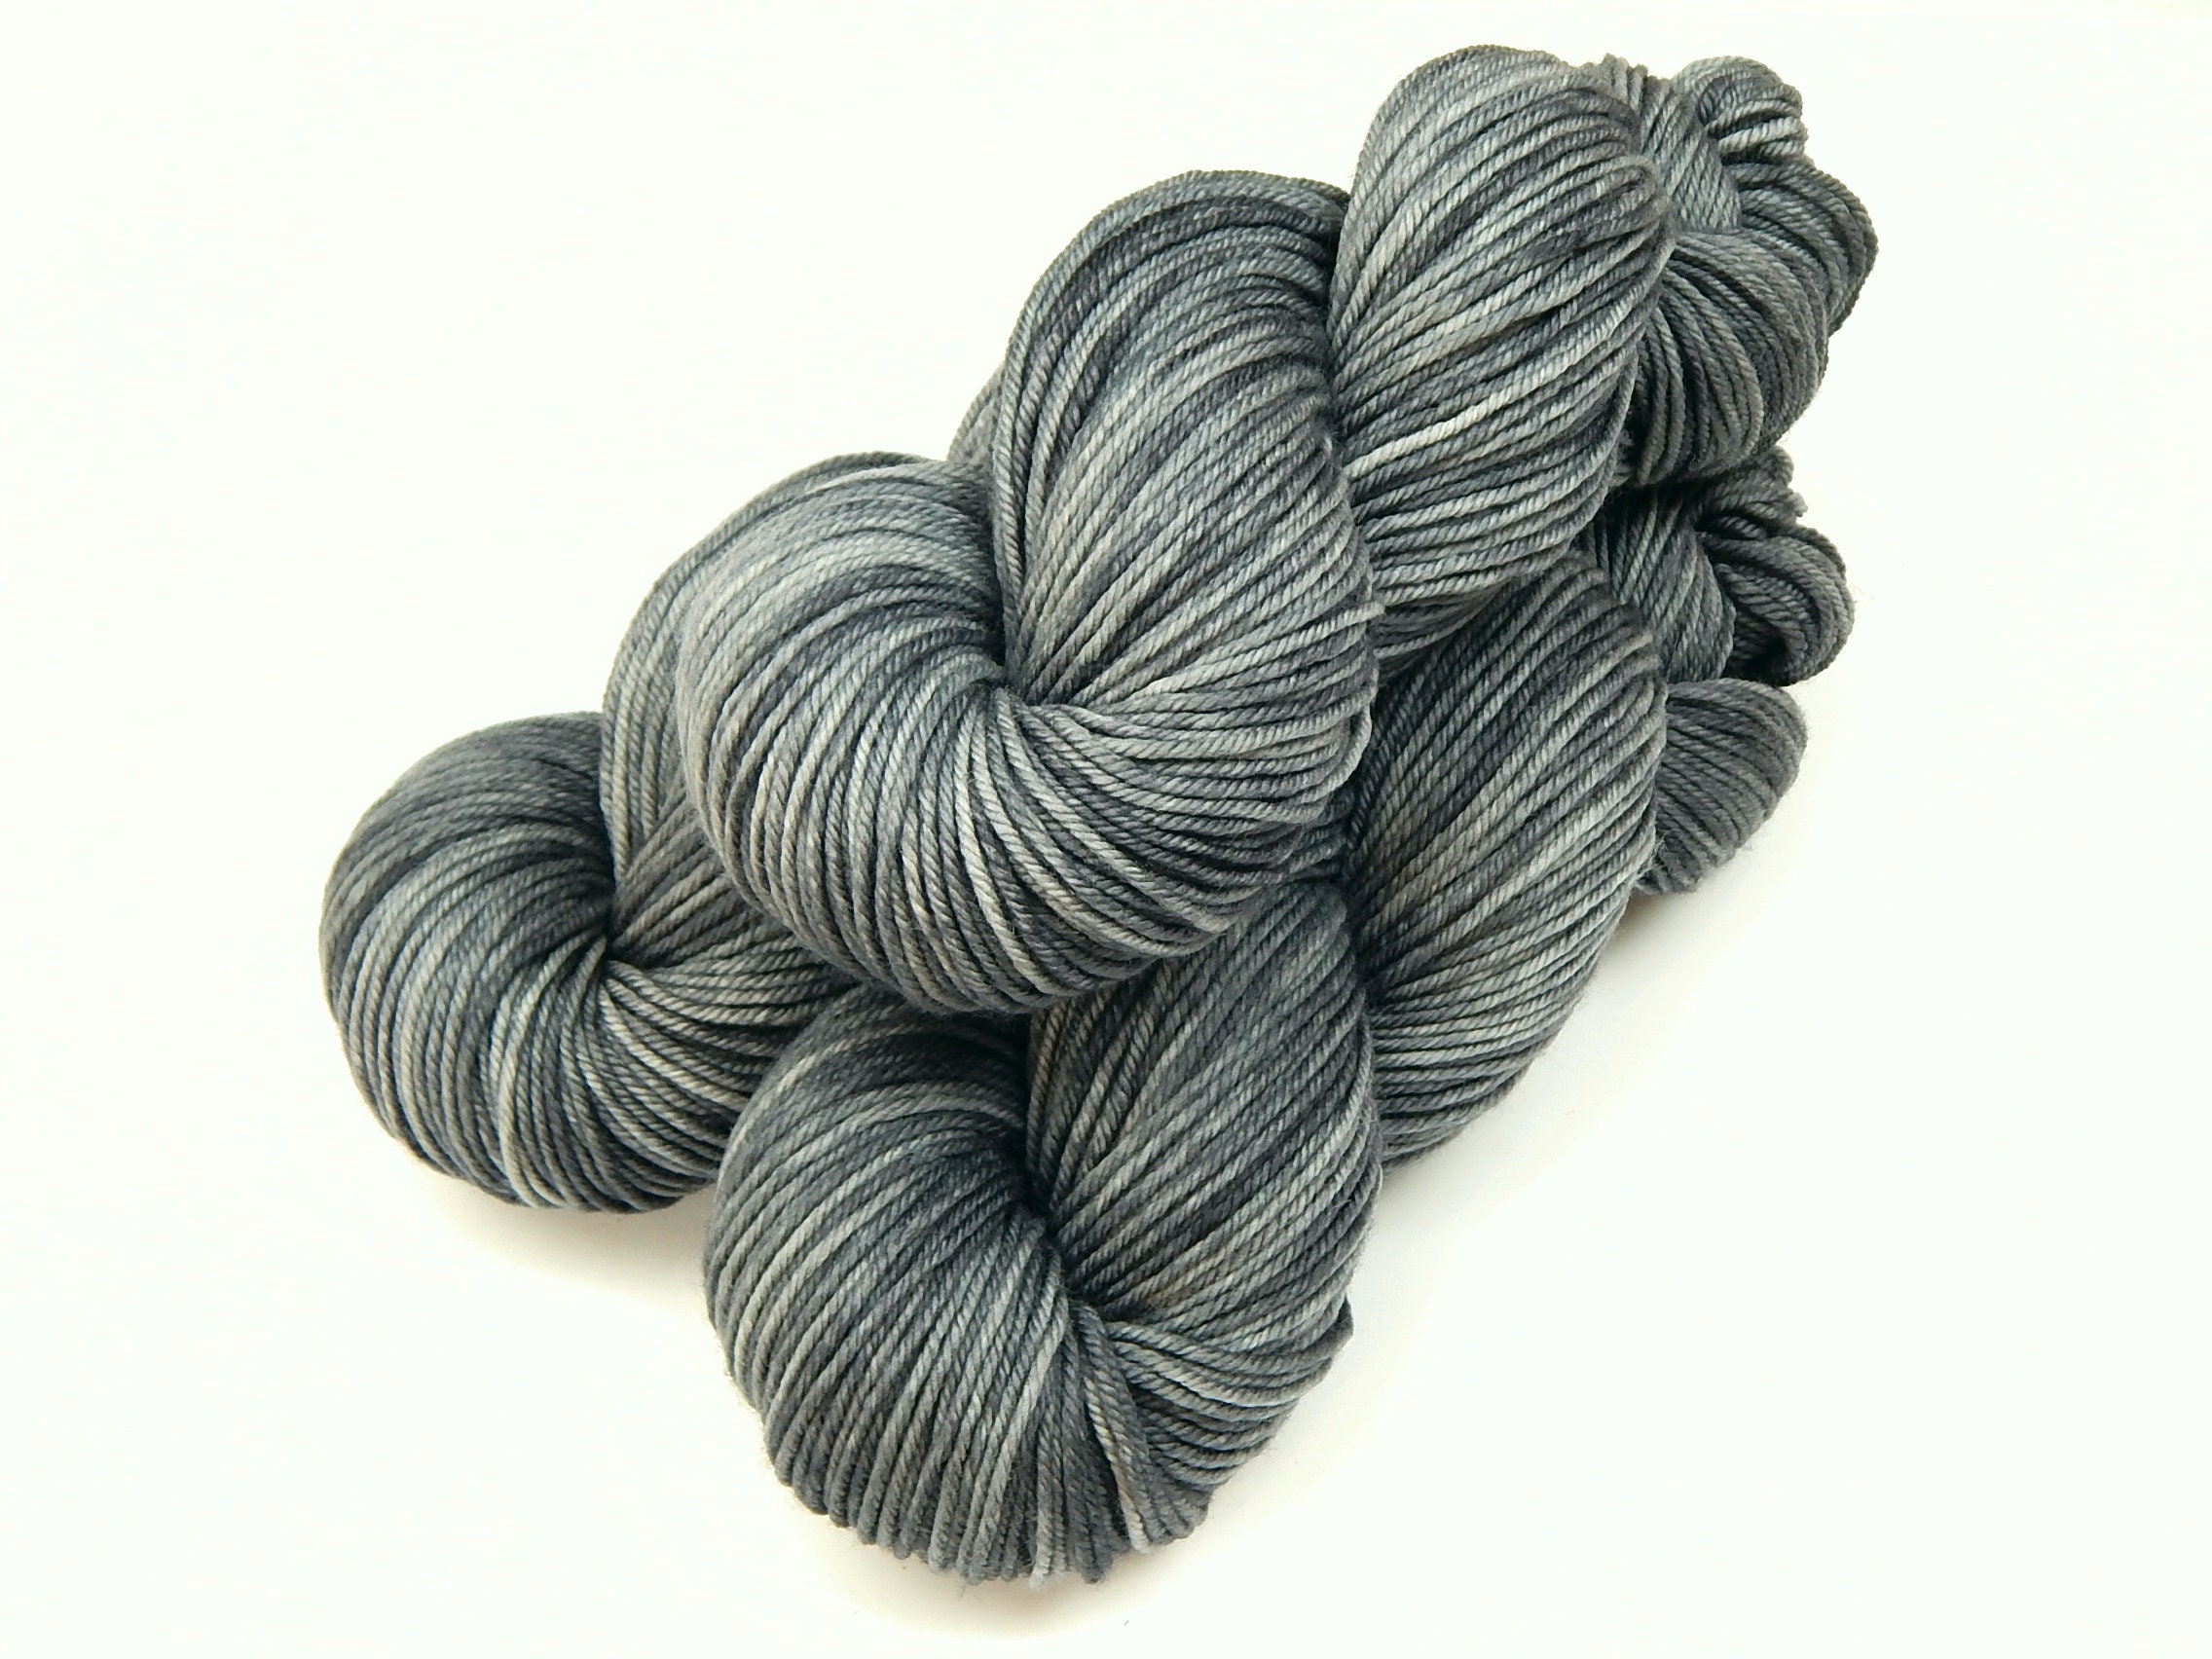 Clara Bulky Weight - 100% Superwash Merino Hand Dyed Yarn 106 yards